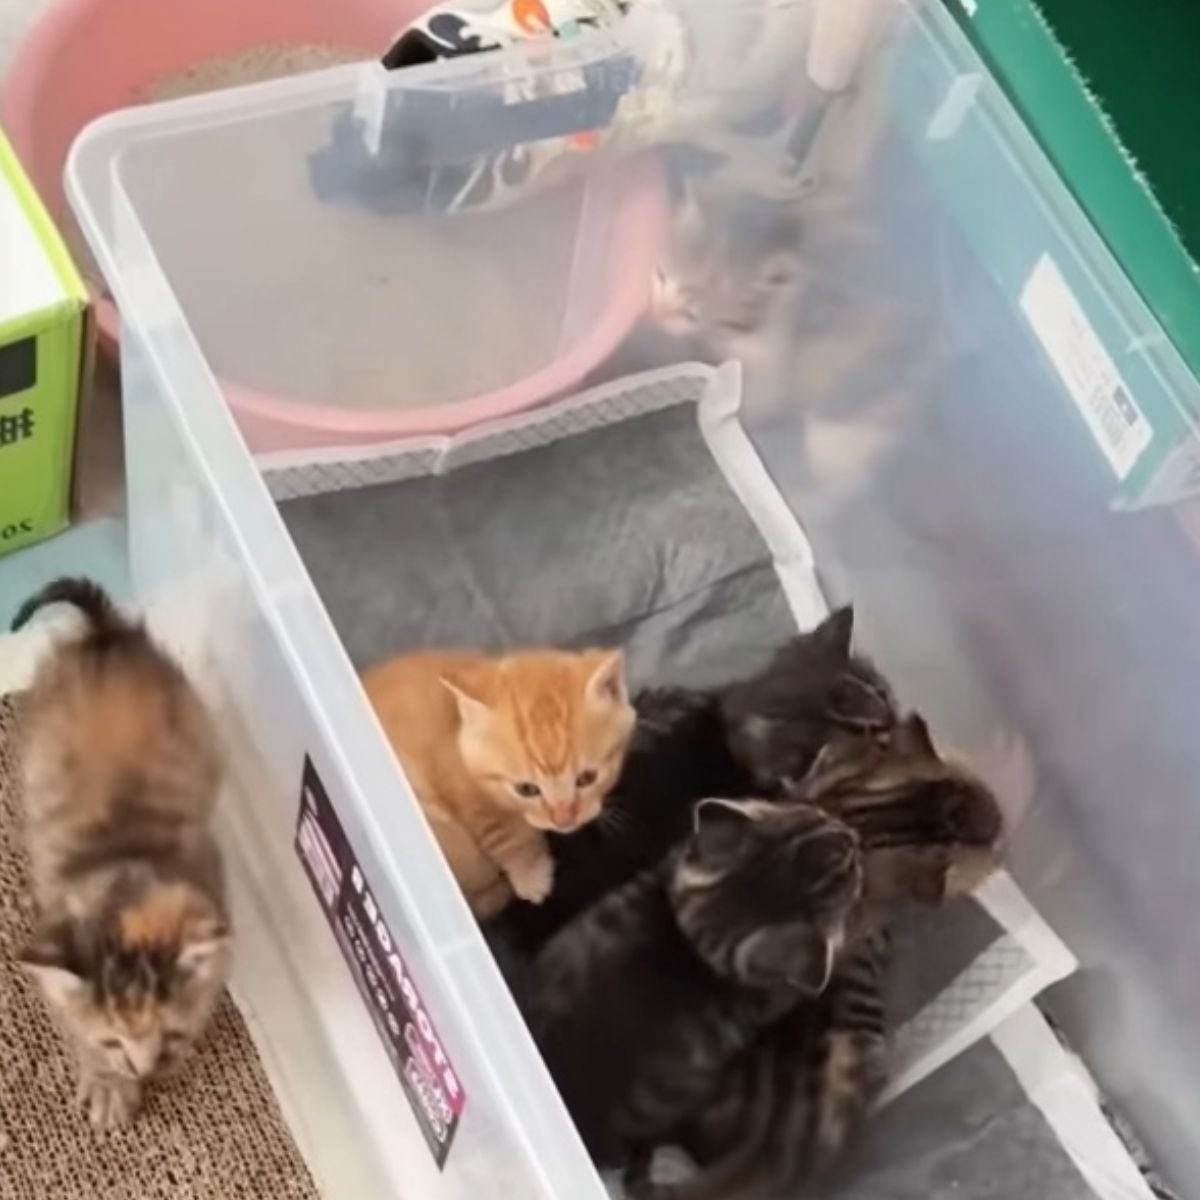 kittens in a plastic box